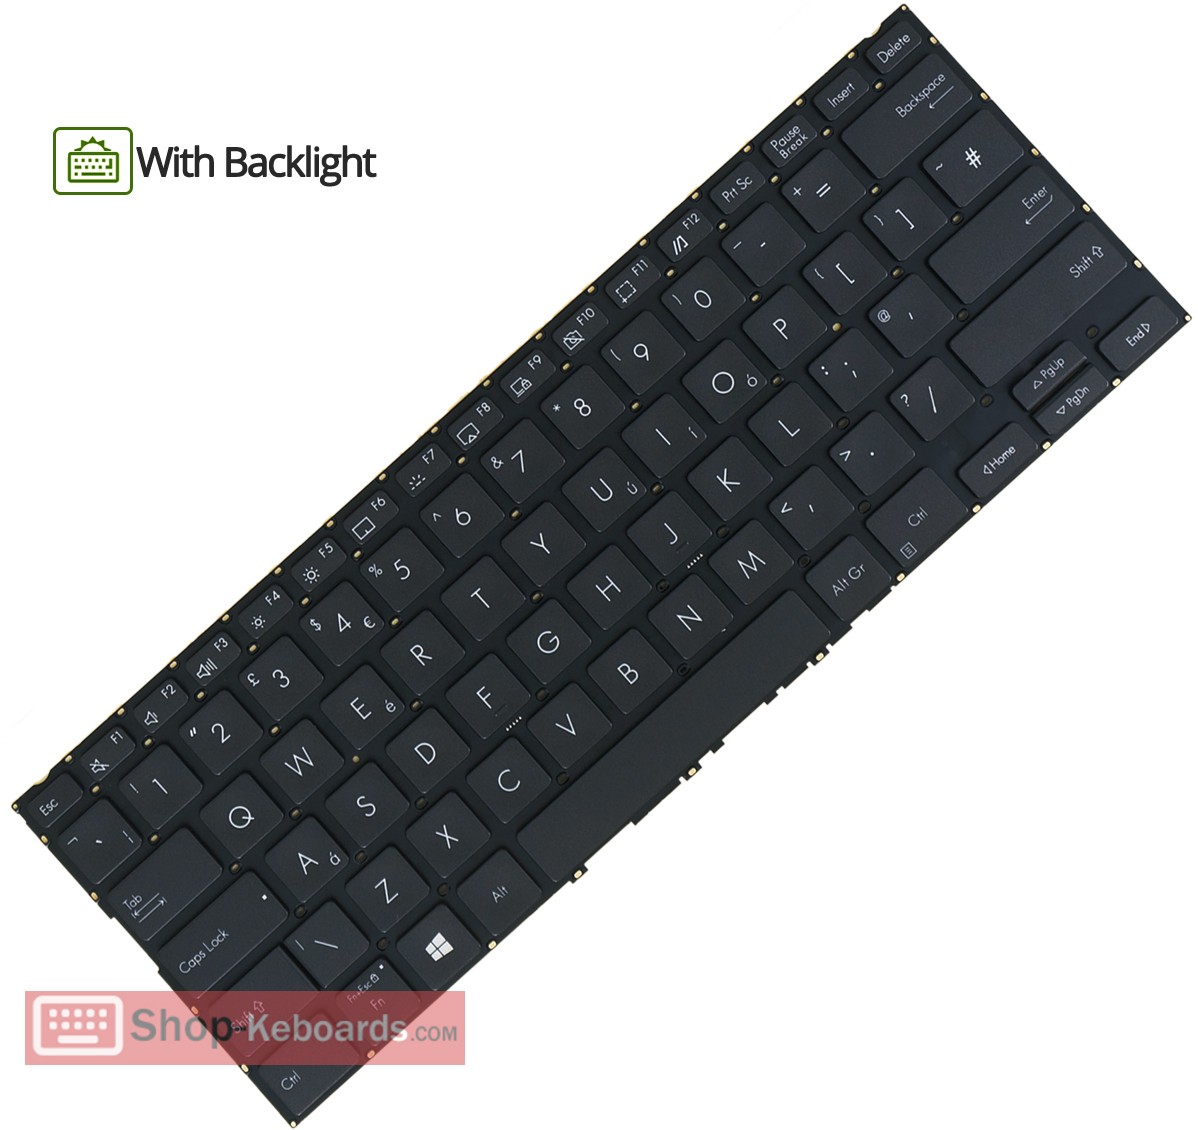 Asus 0KNB0-262VWB00  Keyboard replacement